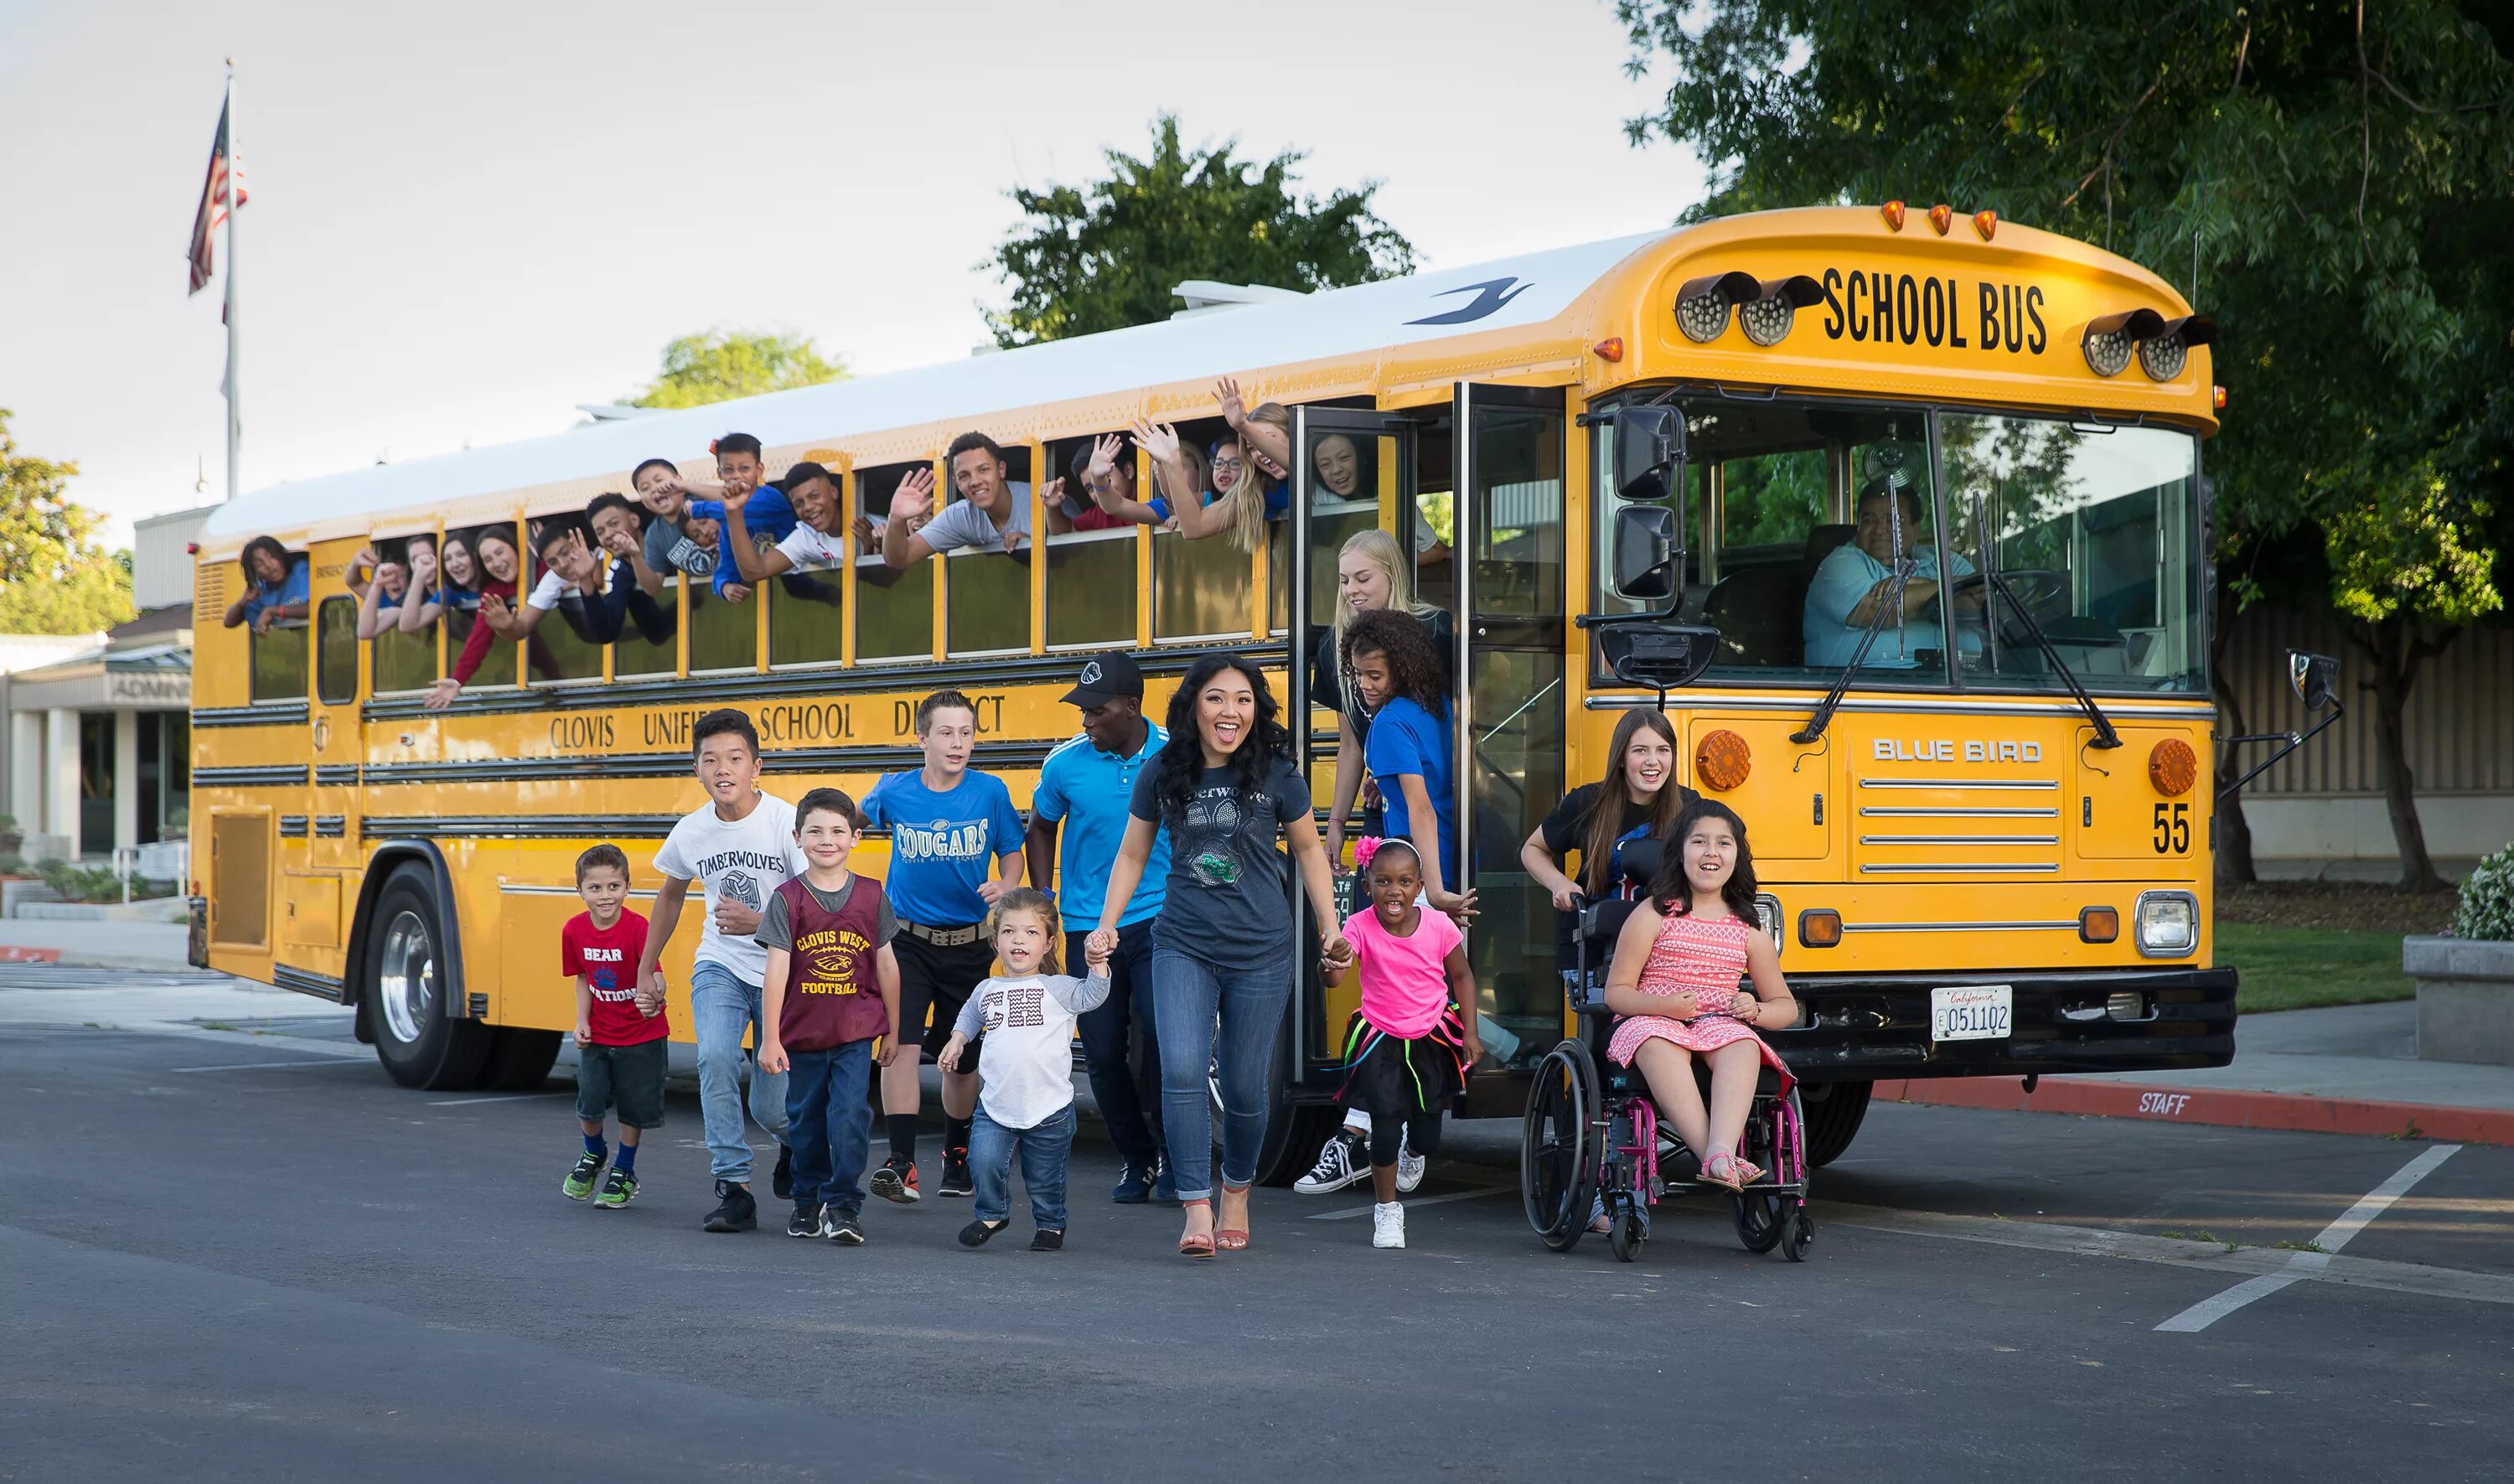 Перевозка детей автобусом заказ. Школьный автобус. Автобусные экскурсии дети. Автобус для детей. Школьный автобус для экскурсий.